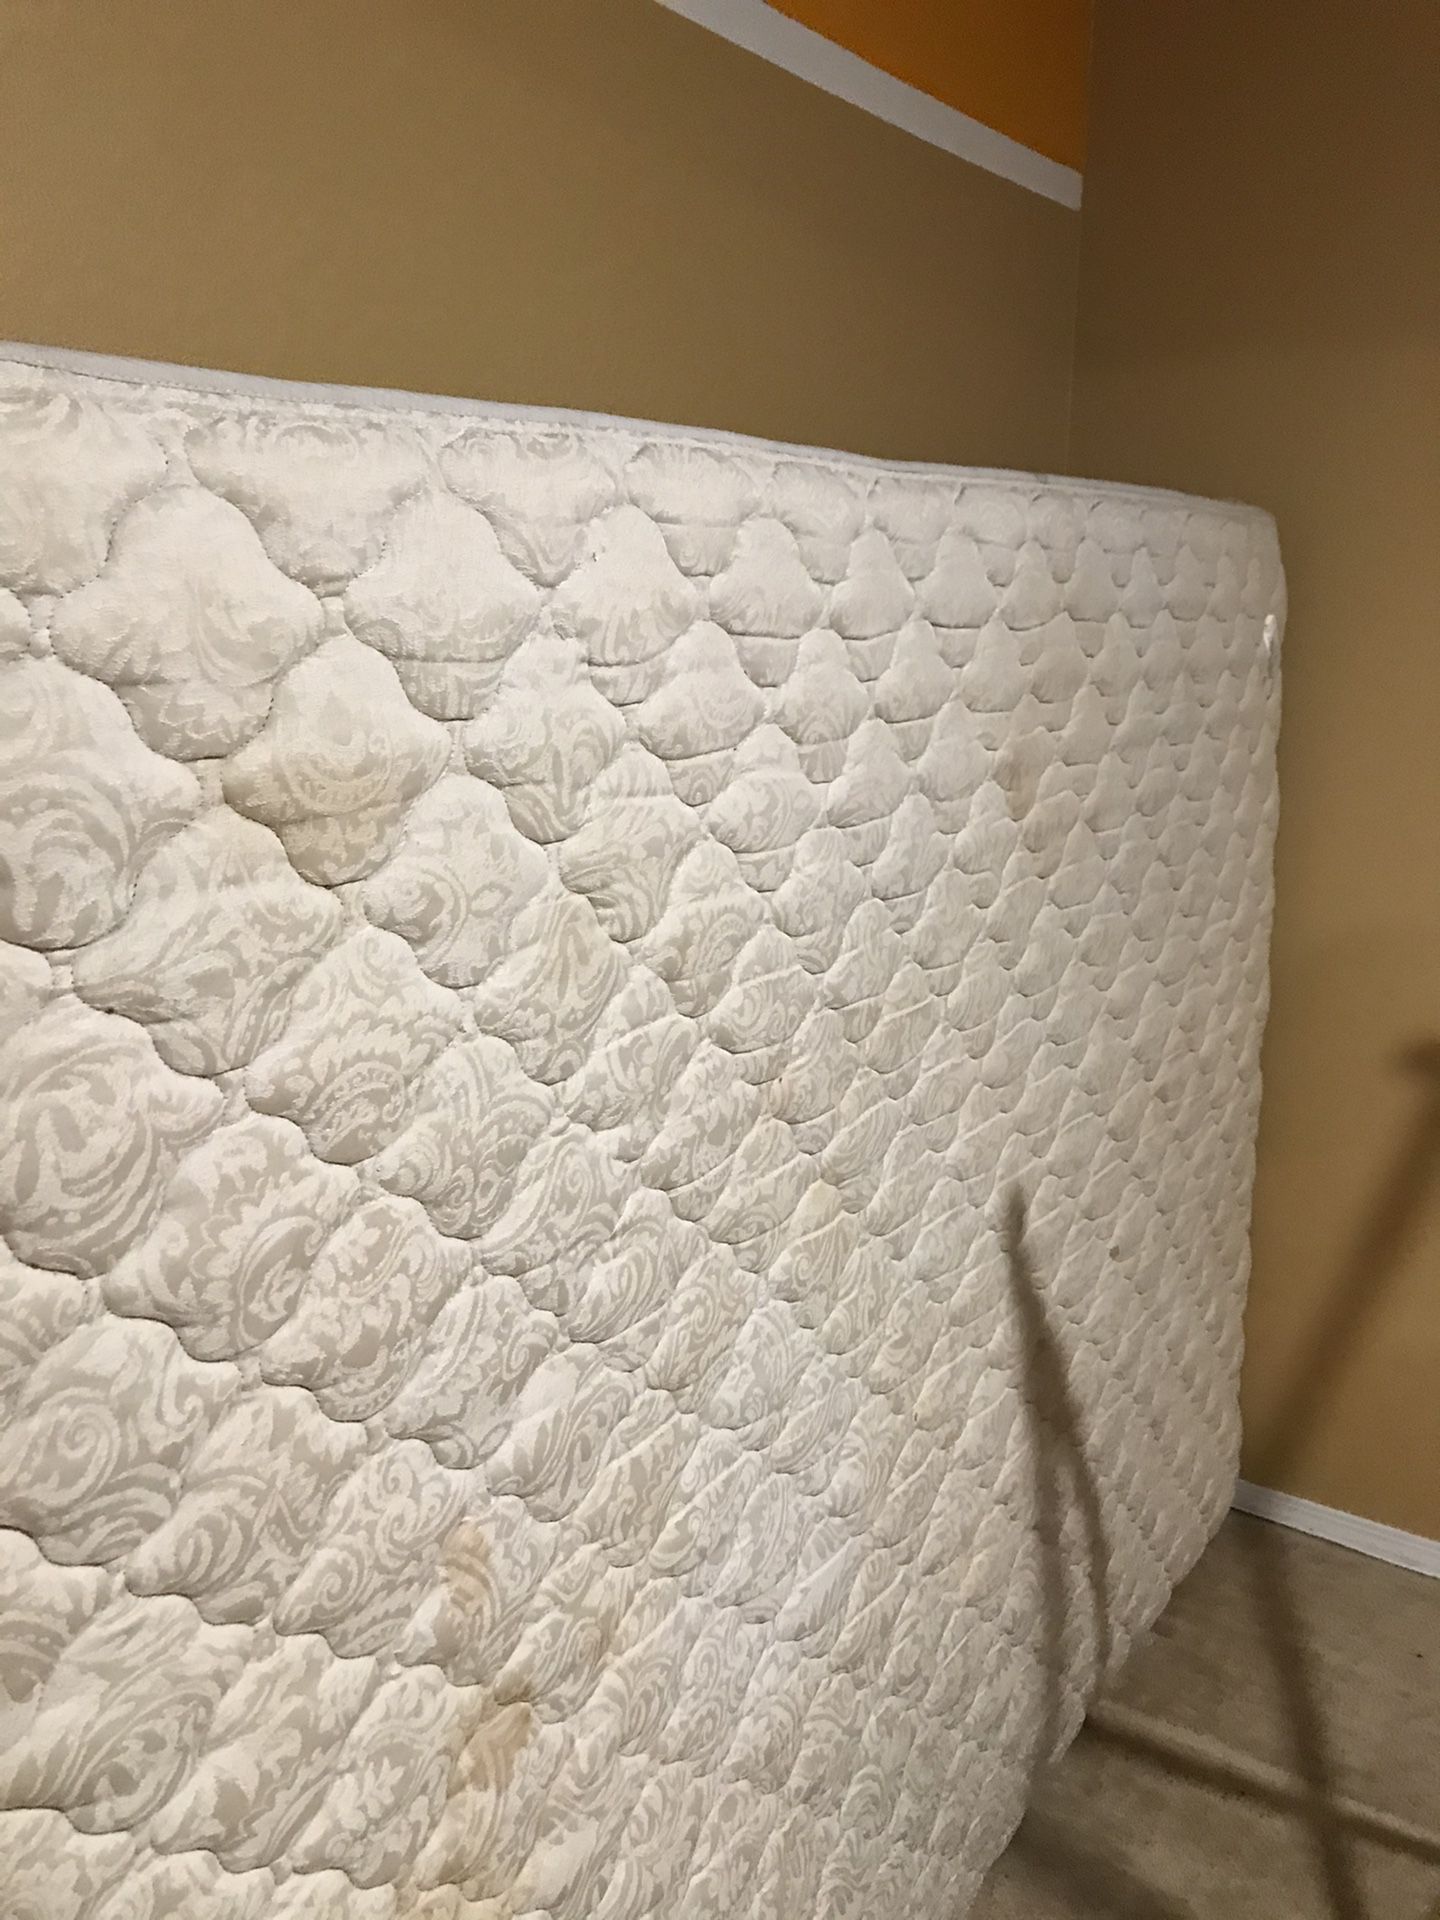 Free Queen size mattress